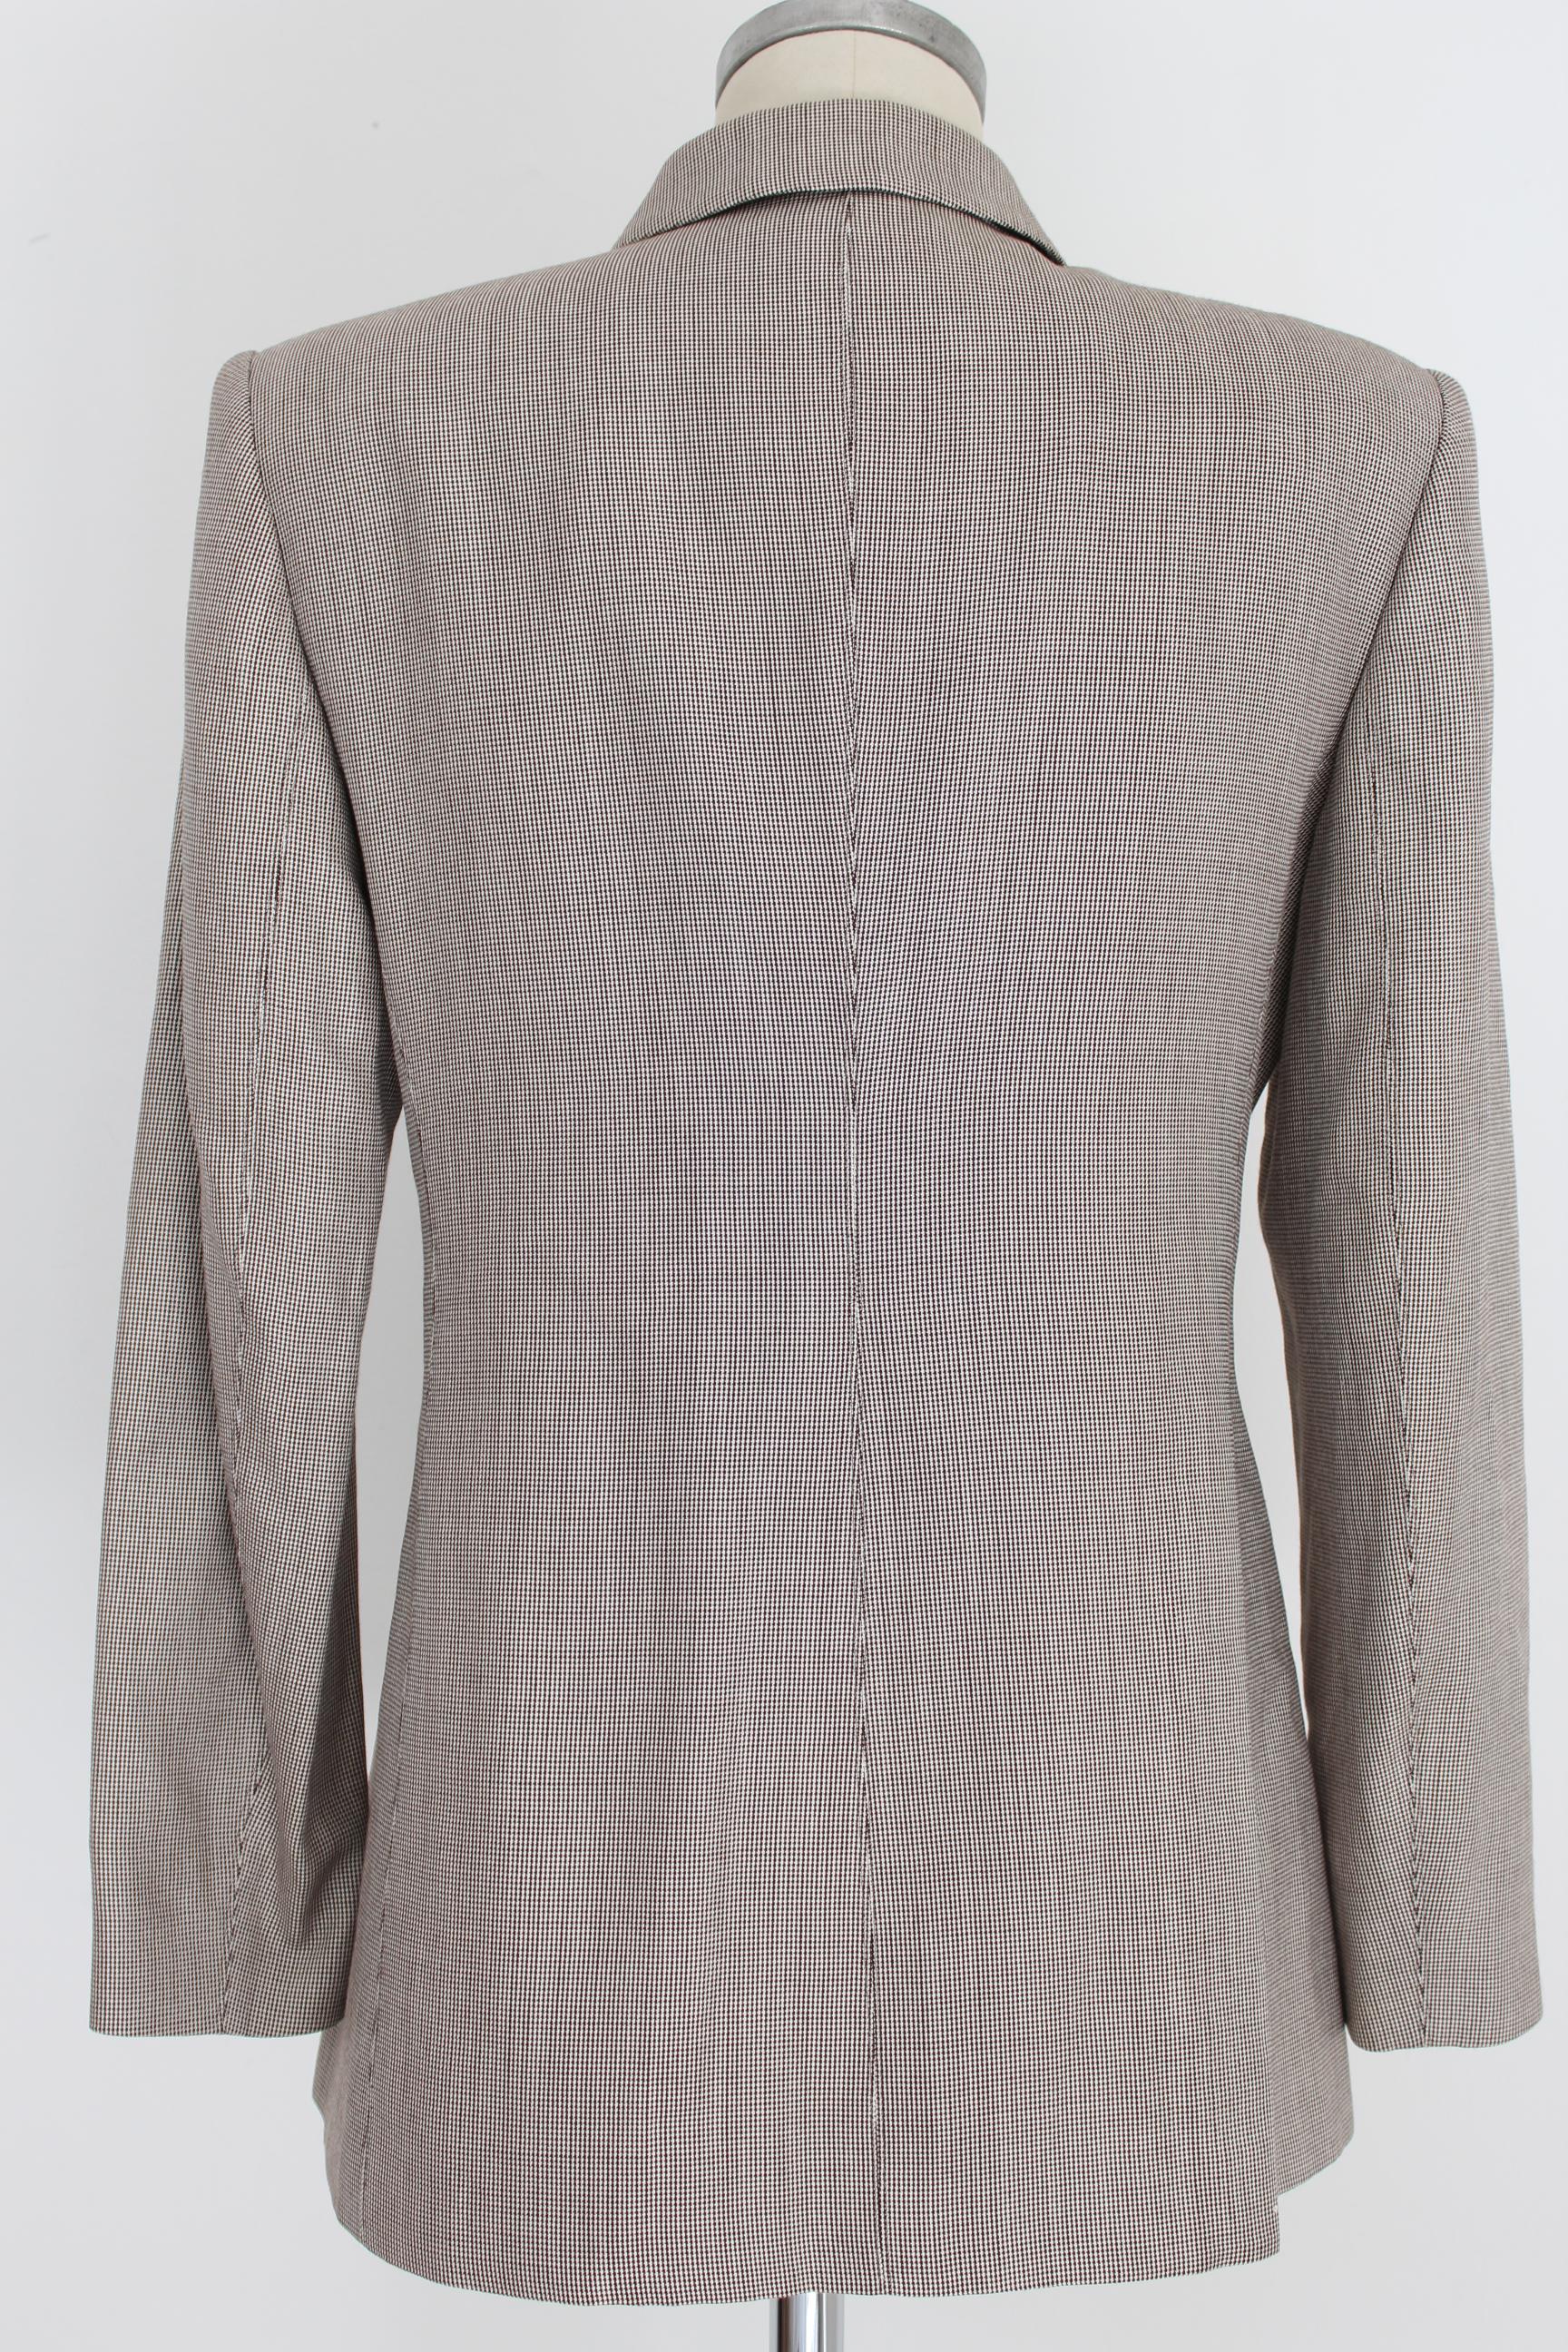 Valentino Silk Wool Beige Vintage Pied de Poule Classic Skirt Suit For Sale 5